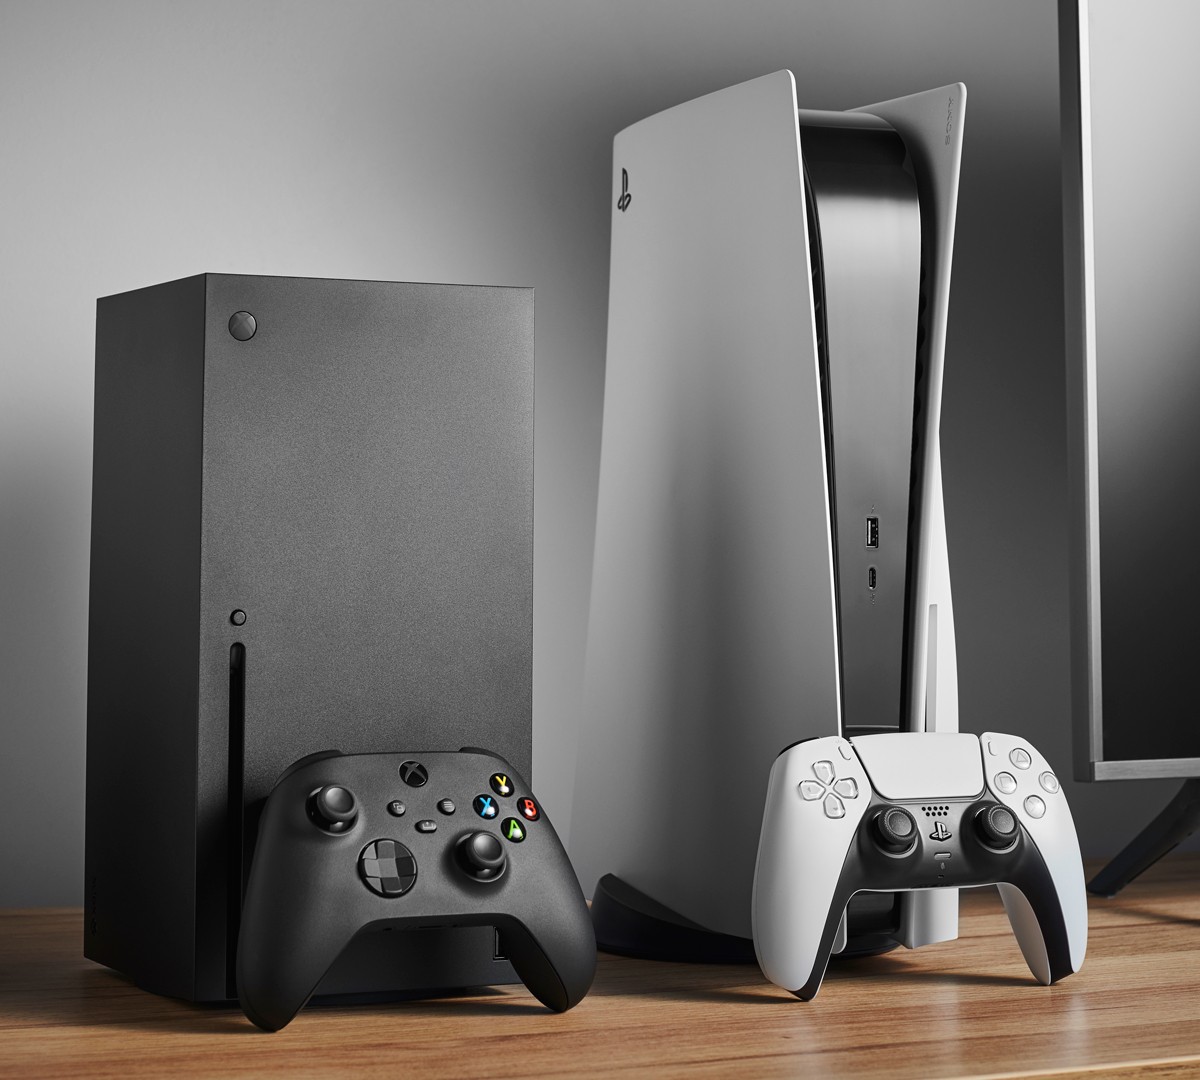 Comparativos de tamanho do PS5 revelam que é maior que o Xbox Series X e PS4;  jogadores estão admirados - Windows Club